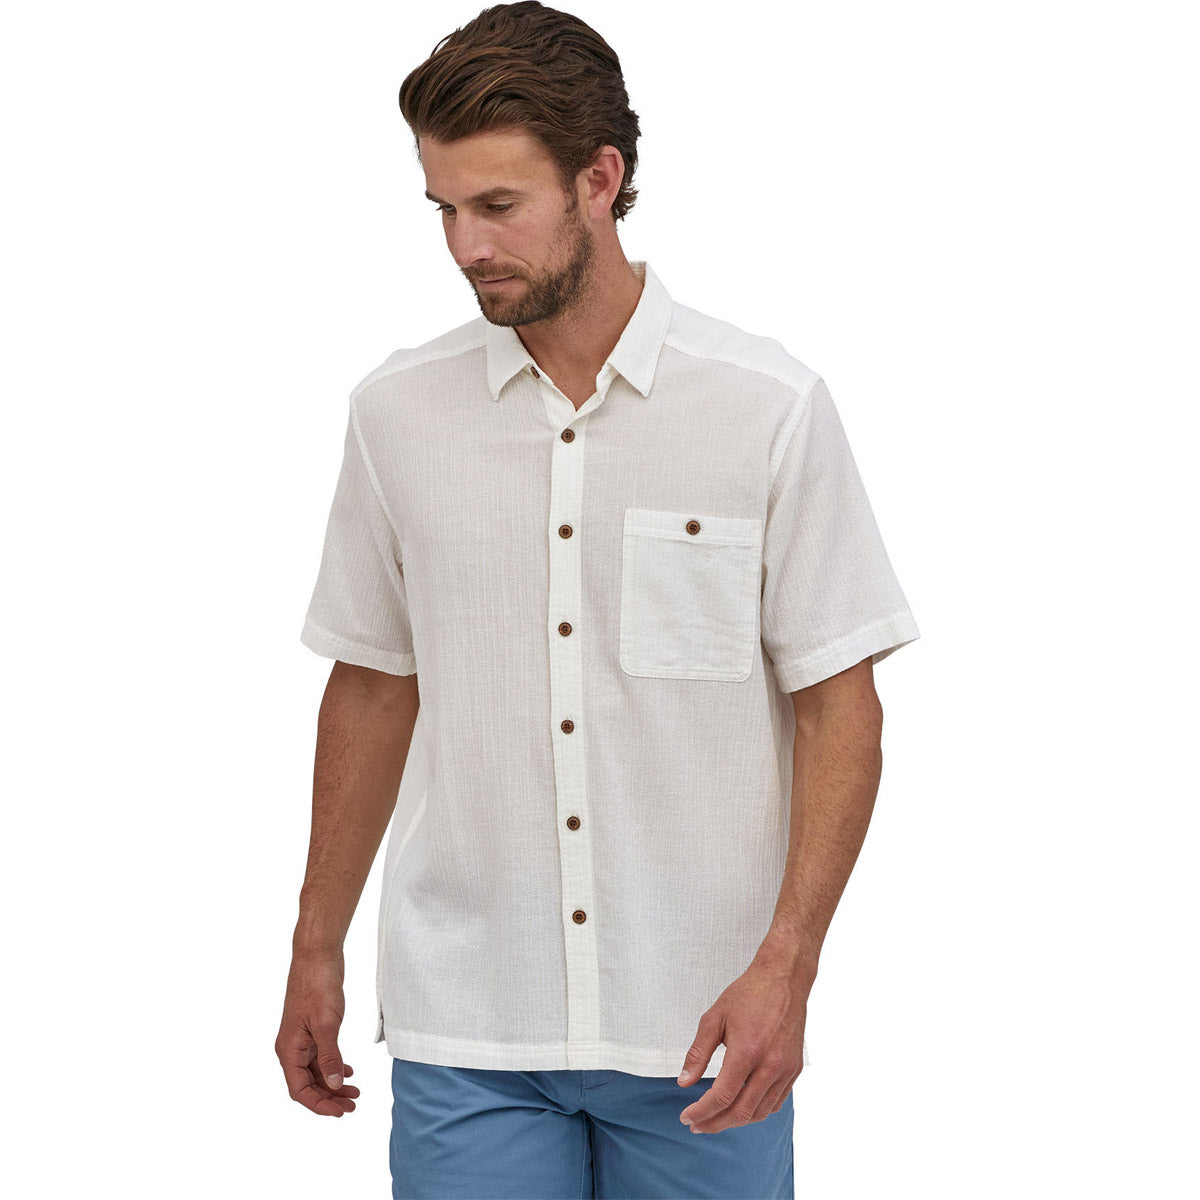 Men's A/C Button Up Shirt